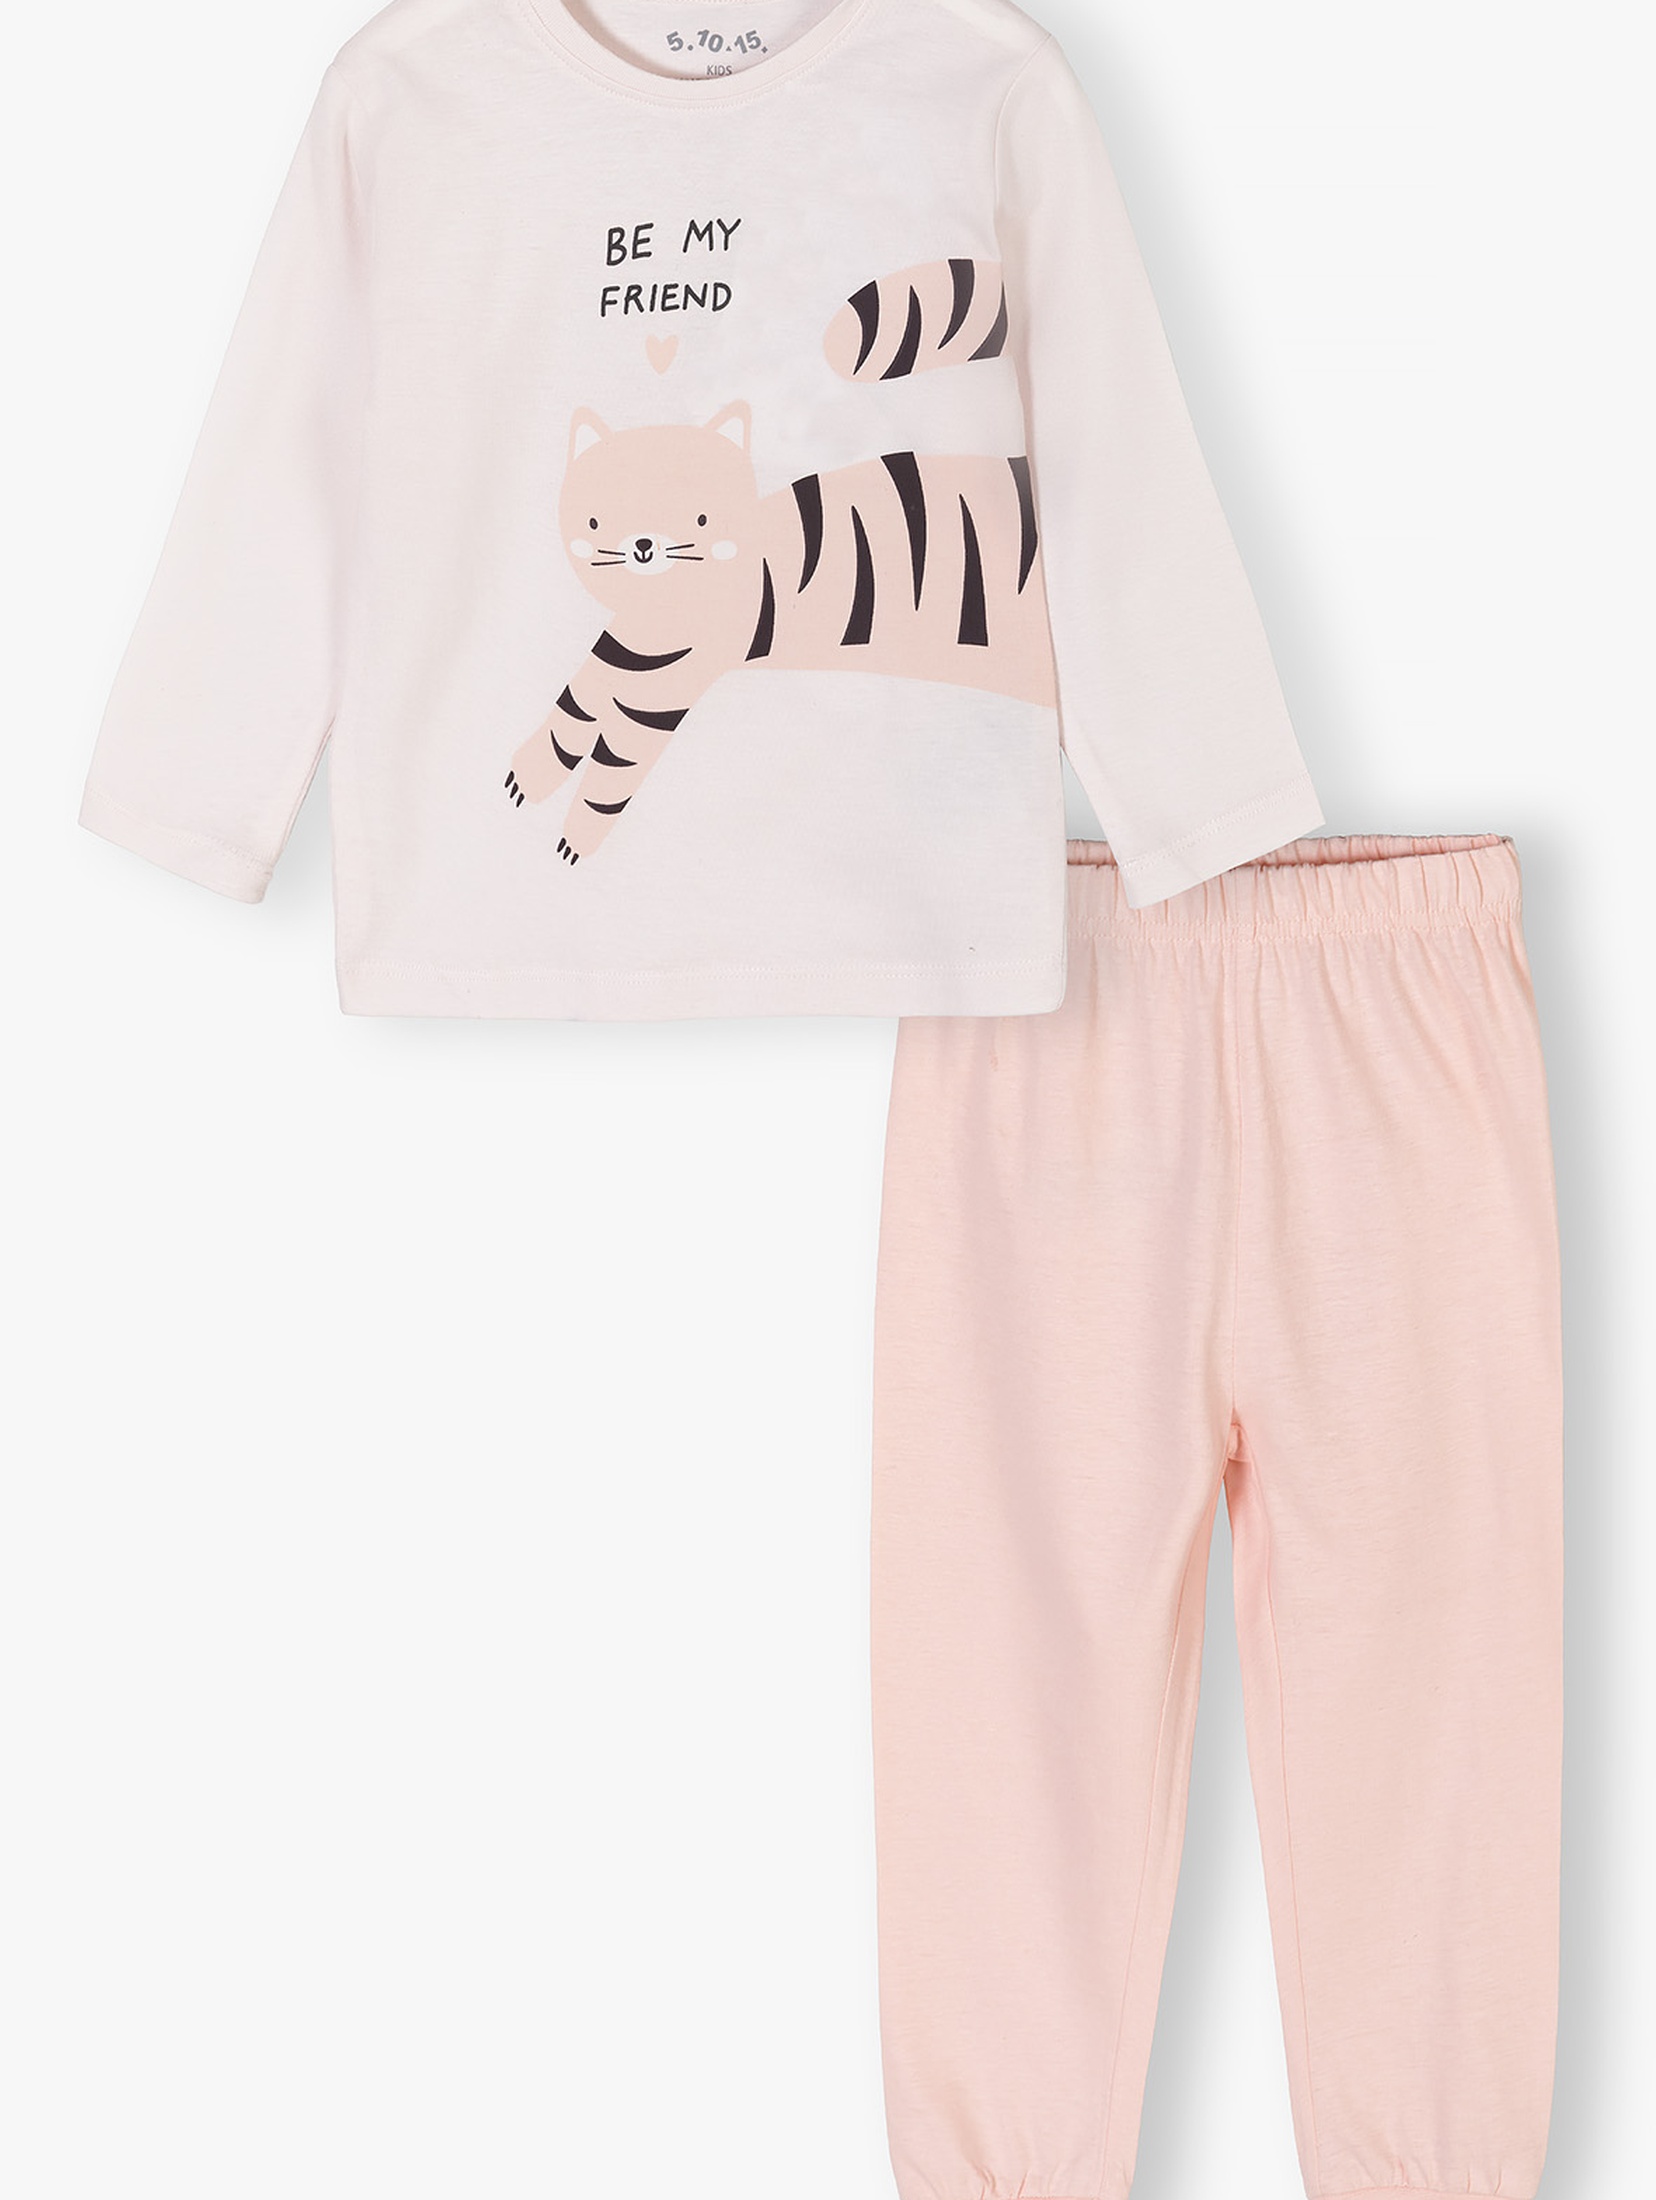 Piżama dla dziewczynki - różowa z kotem